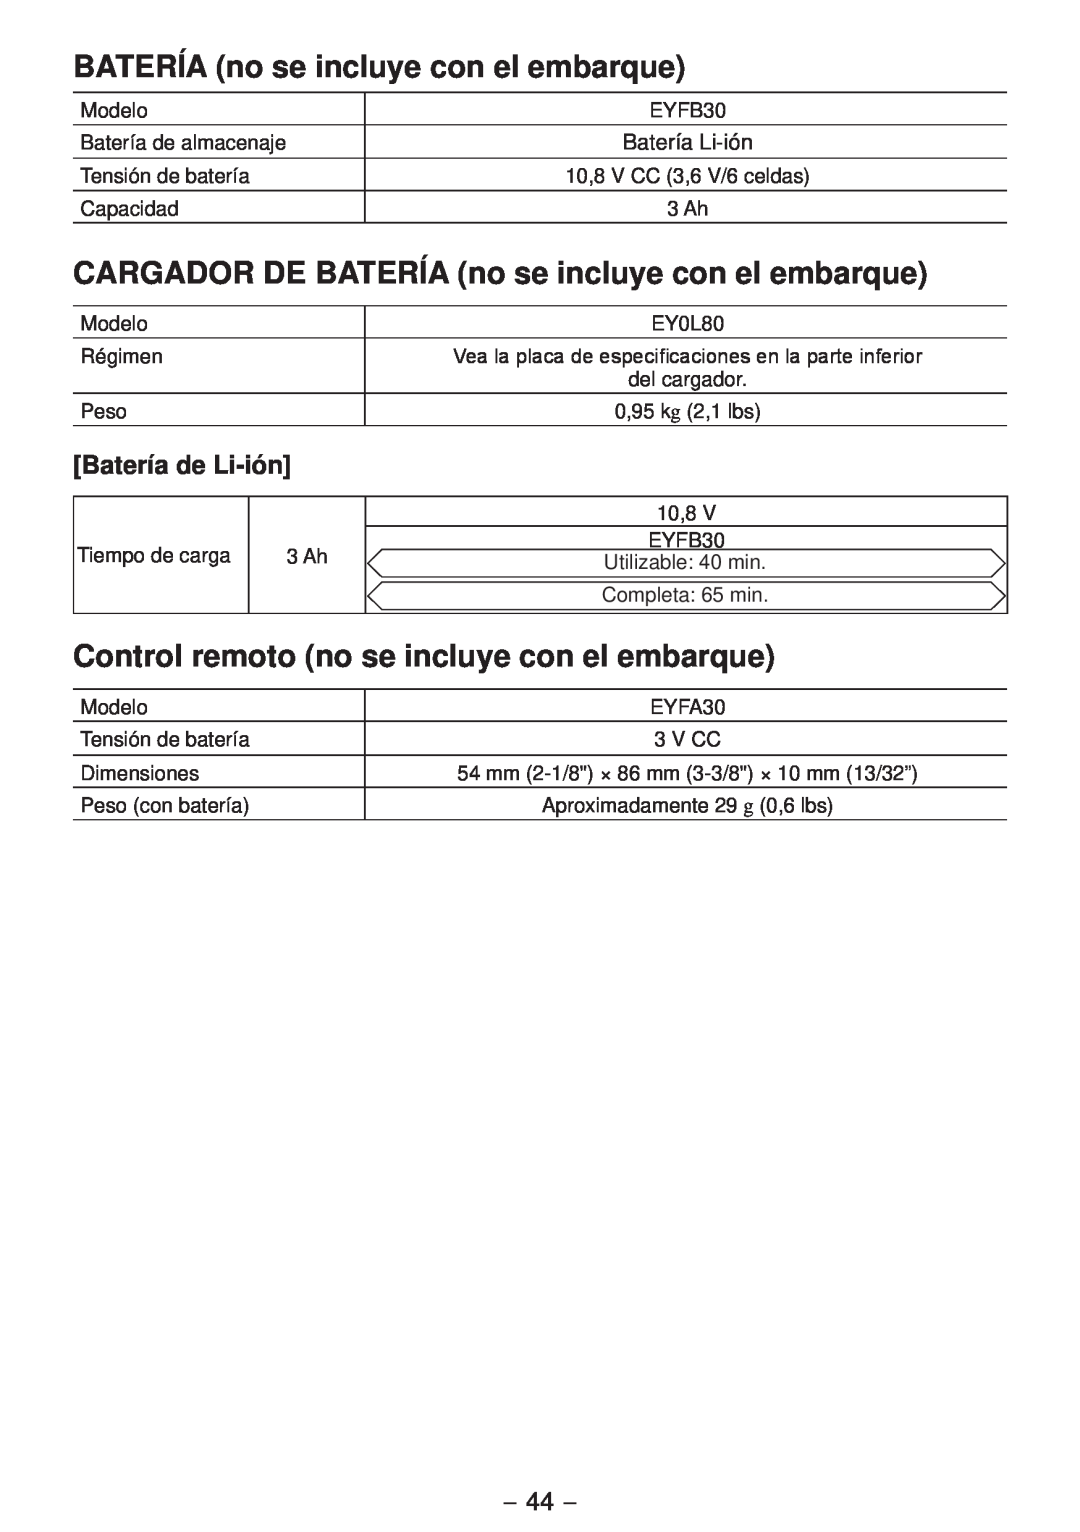 Panasonic EYFLA2Q CARGADOR DE BATERÍA no se incluye con el embarque, Control remoto no se incluye con el embarque 